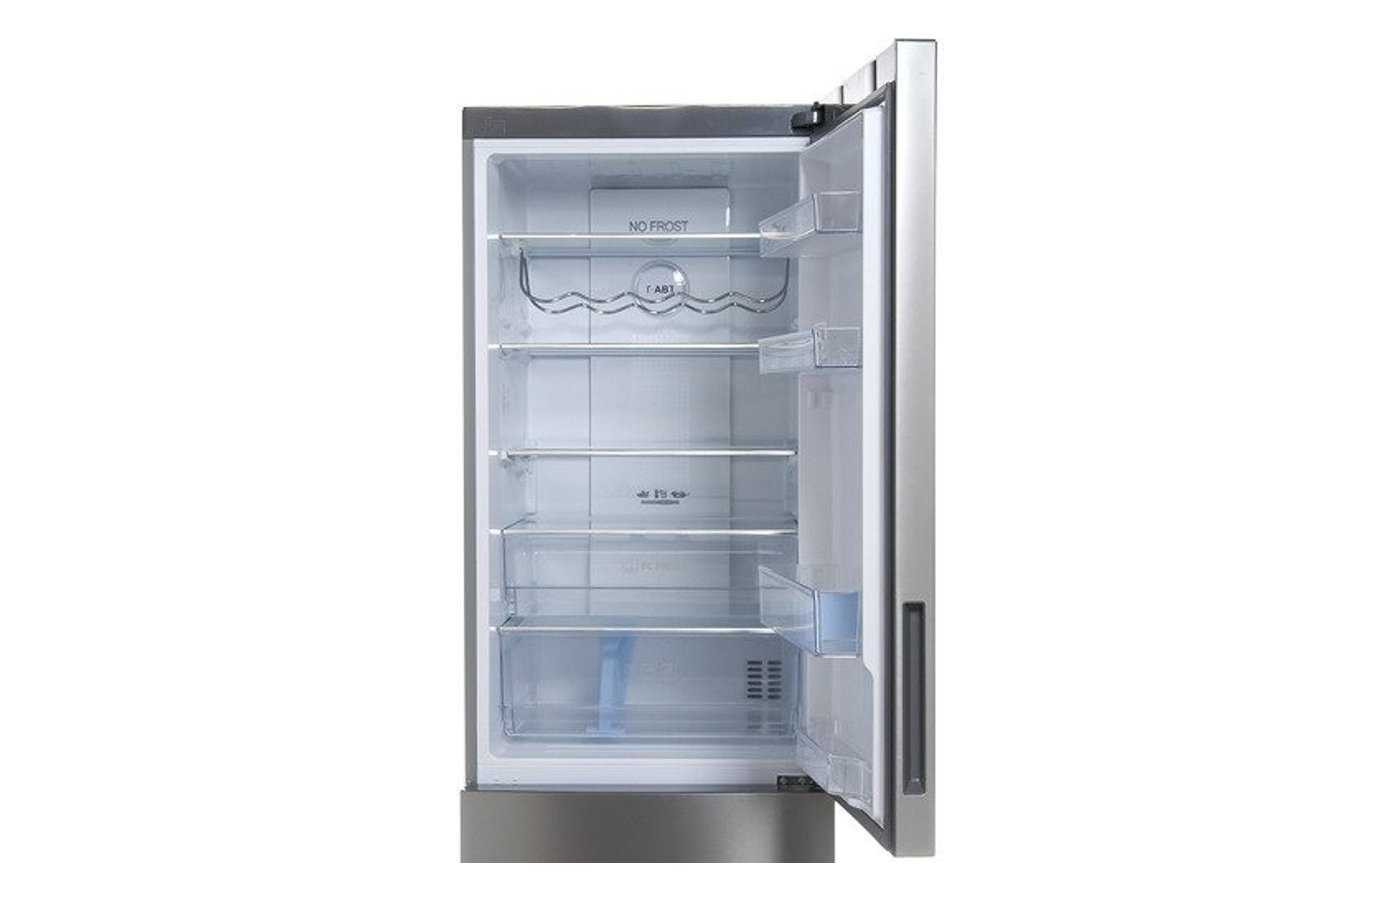 Рейтинг лучших холодильников Haier преимущества и недостатки популярных моделей холодильников, самые популярные модели среди пользователей, отзывы реальных владельцев